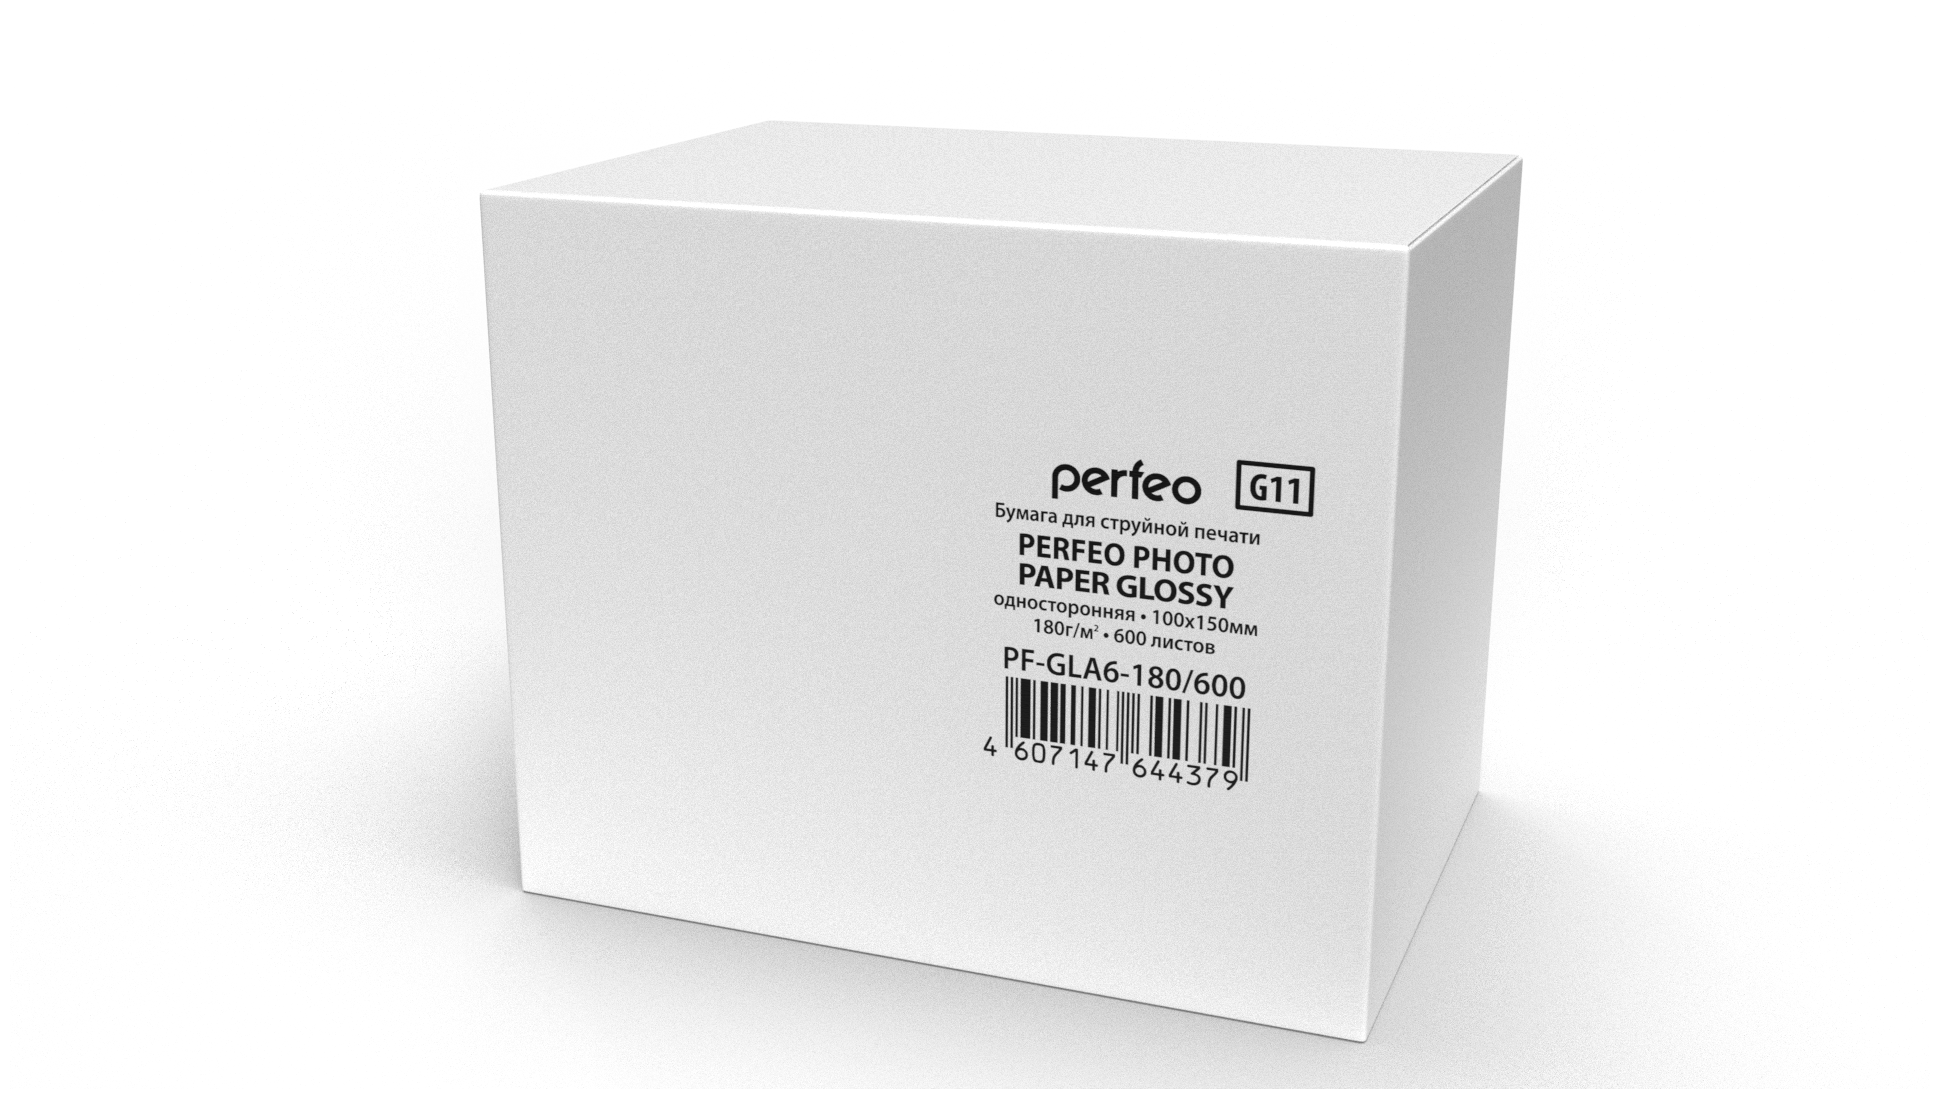 Perfeo PF-GLA6-180 600 Бумага глянцевая 600л, 10х15 180 г м2 G11